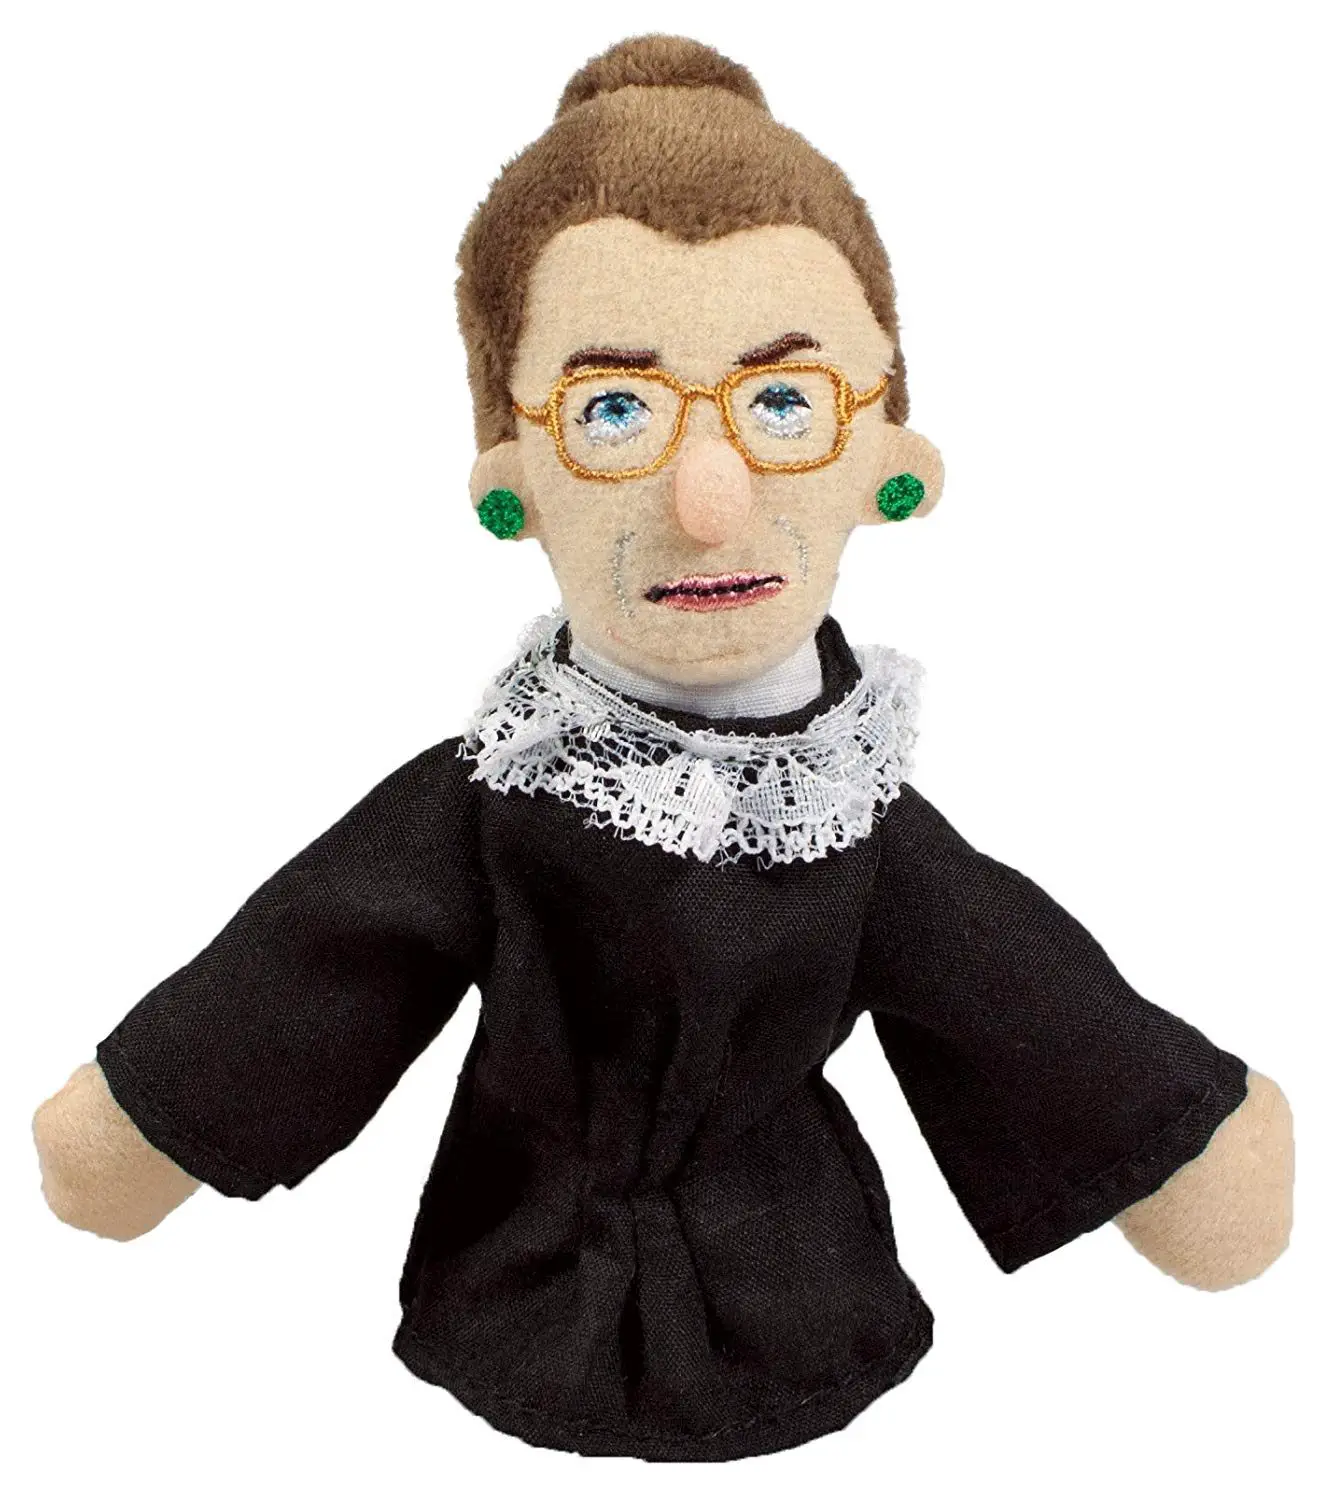 Ruth Bader Ginsberg finger puppet and frig magnet